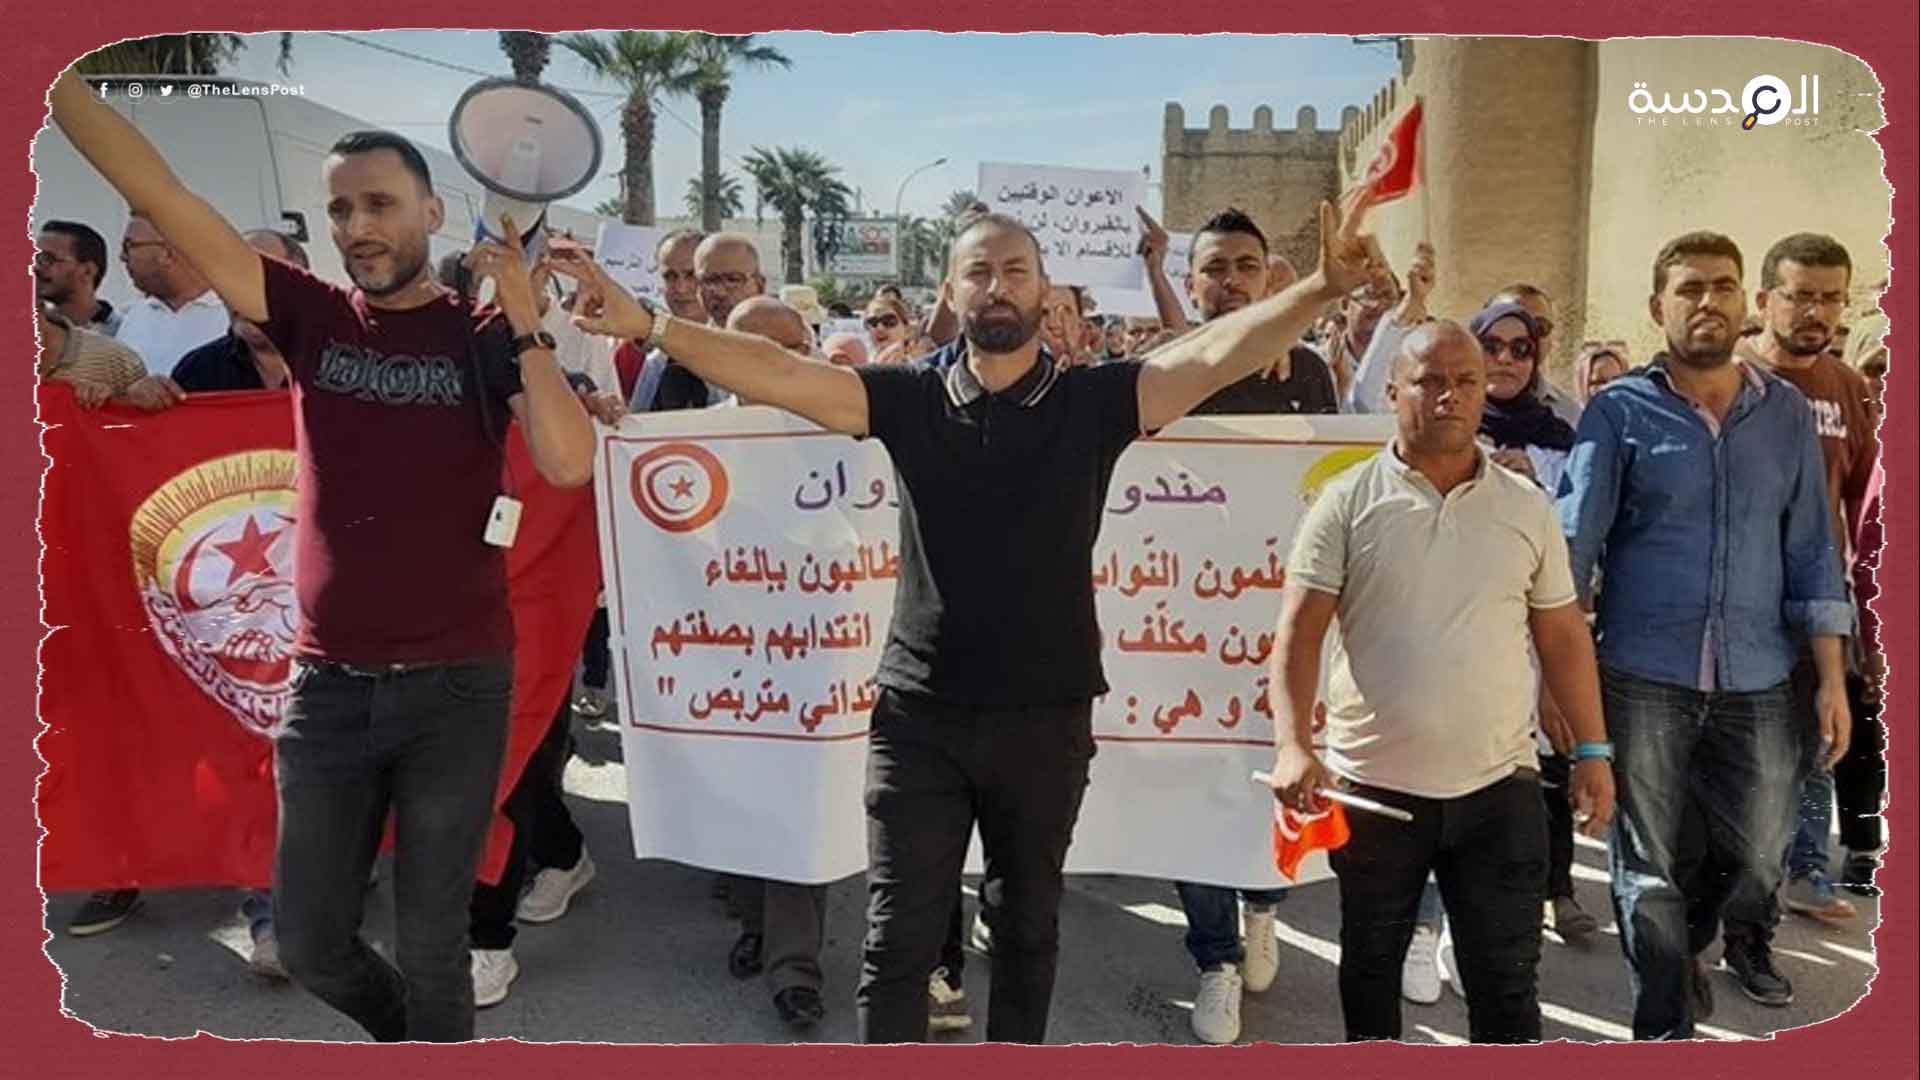 تونس..مظاهرات لآلاف المعلمين للمطالبة بتسوية أوضاعهم المهنية